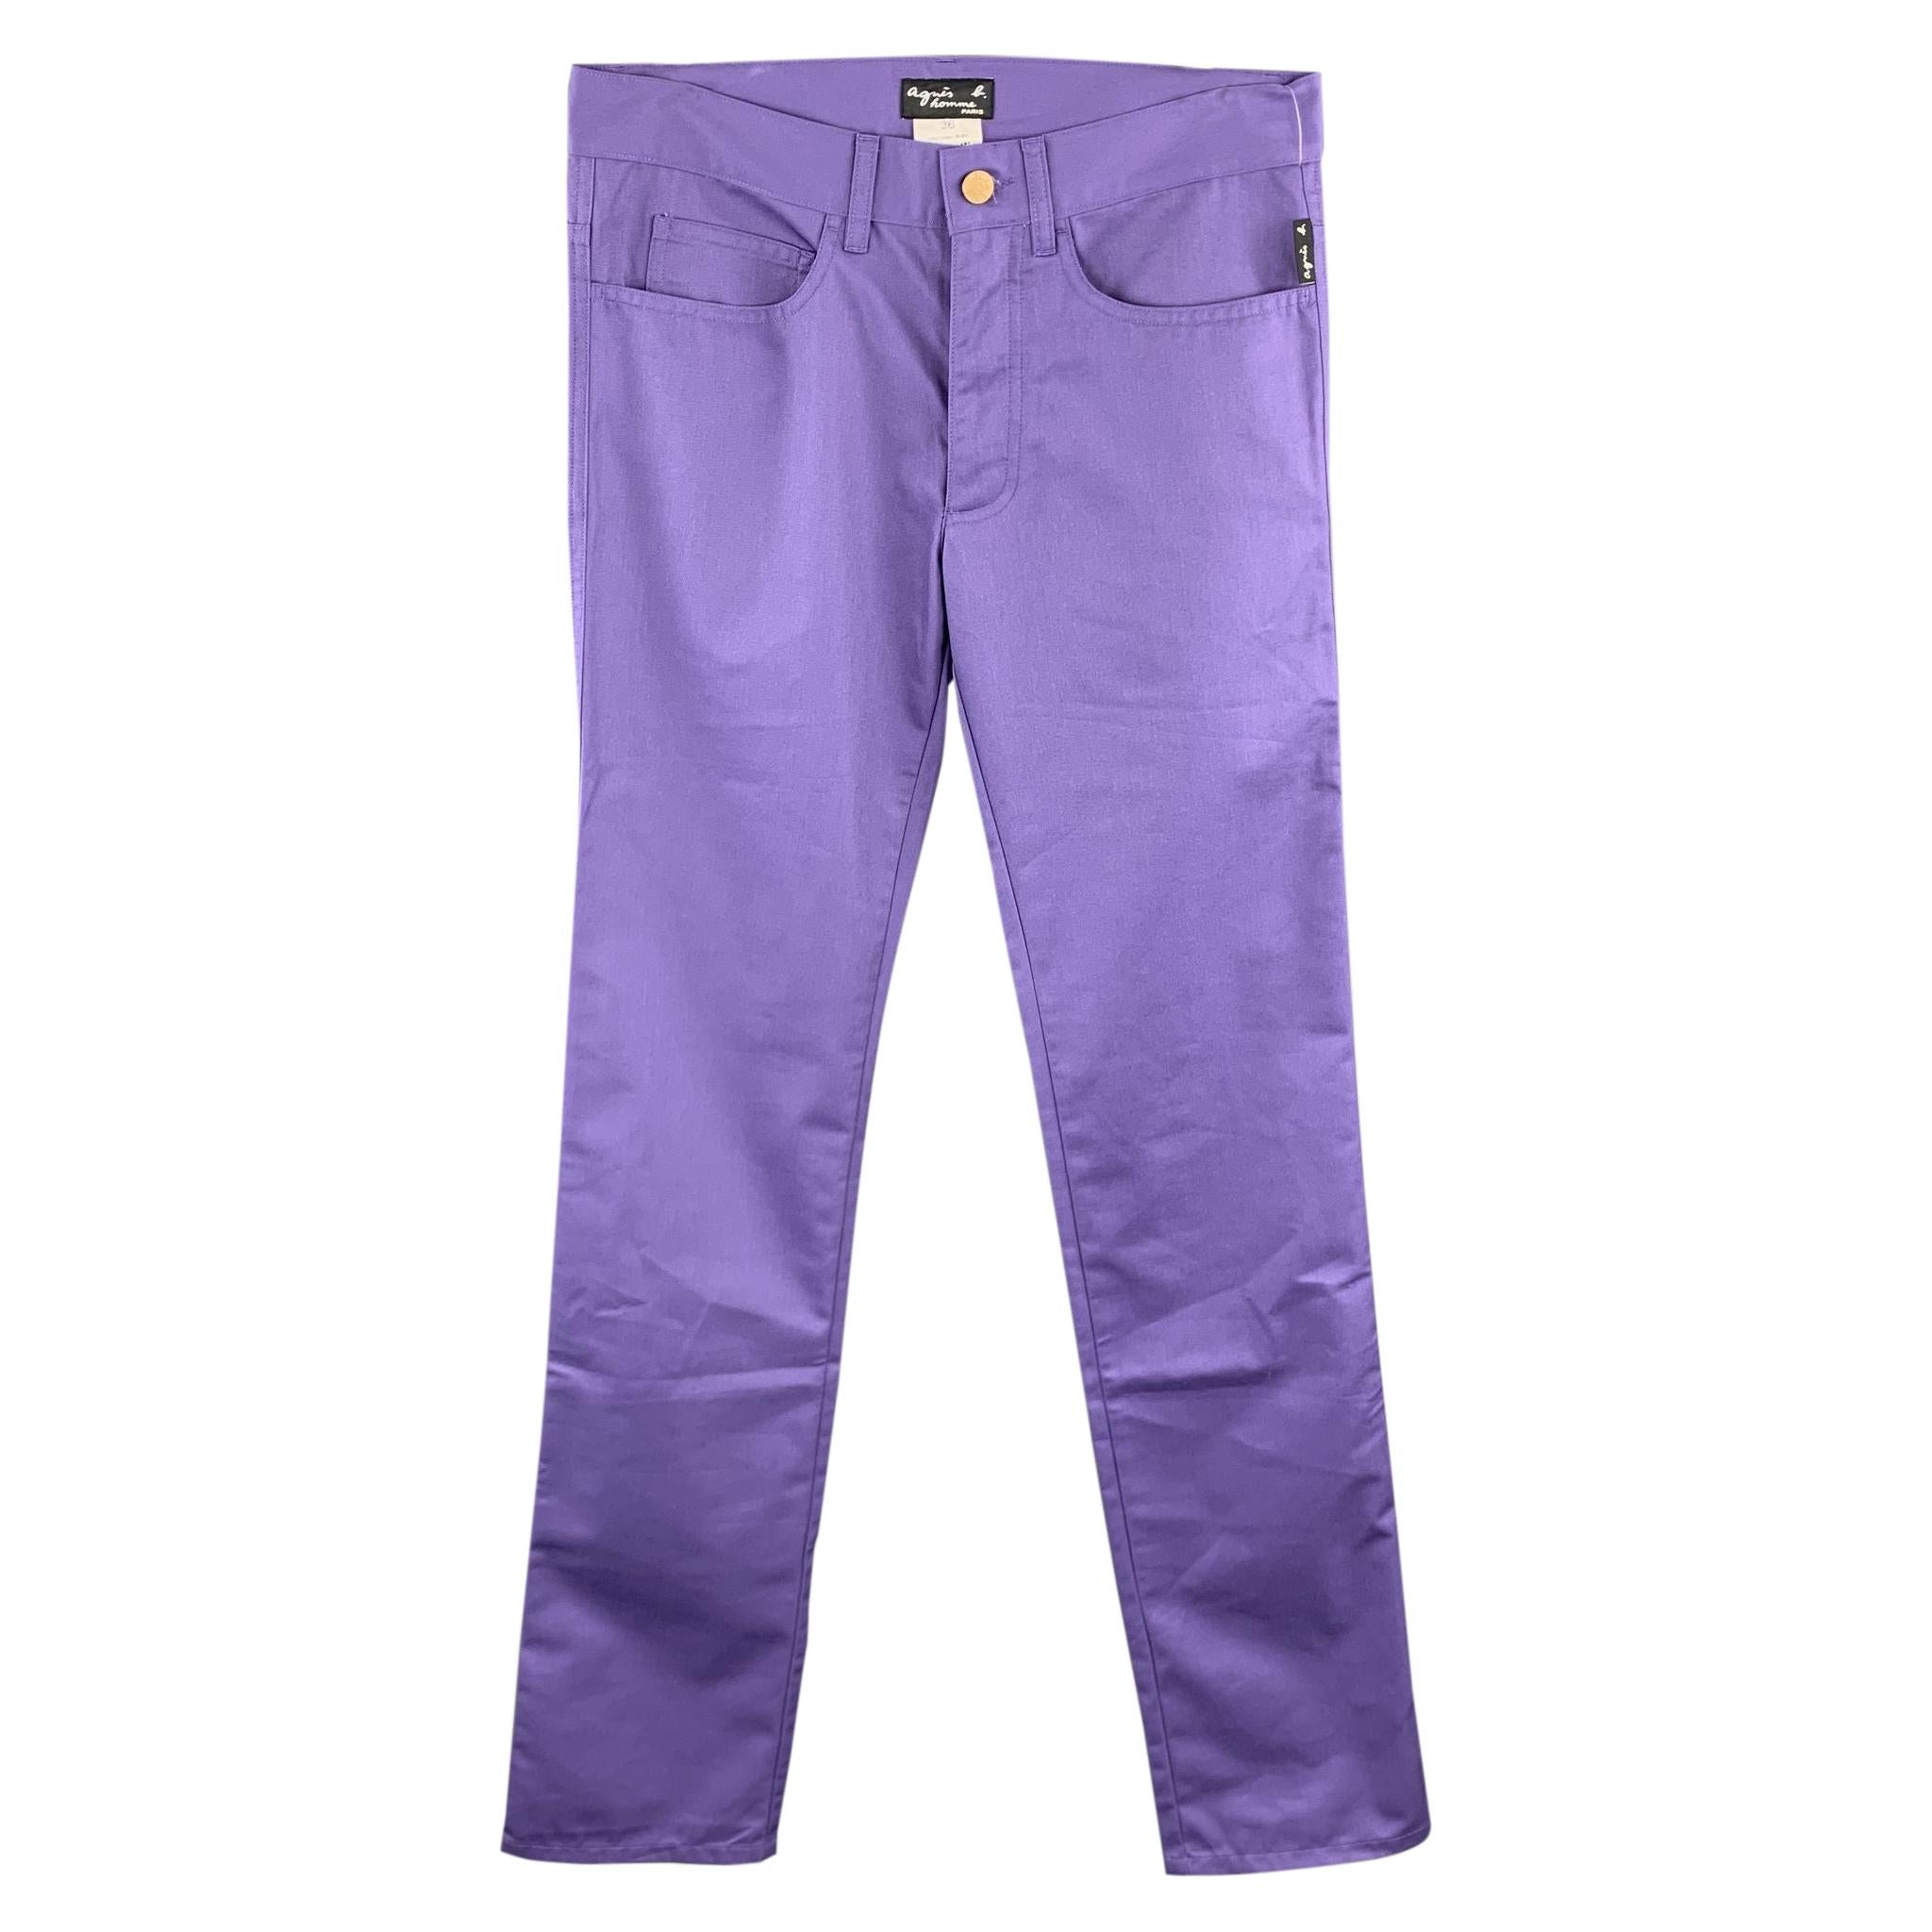 AGNES B. Size 30 Purple Cotton Blend Casual Pants